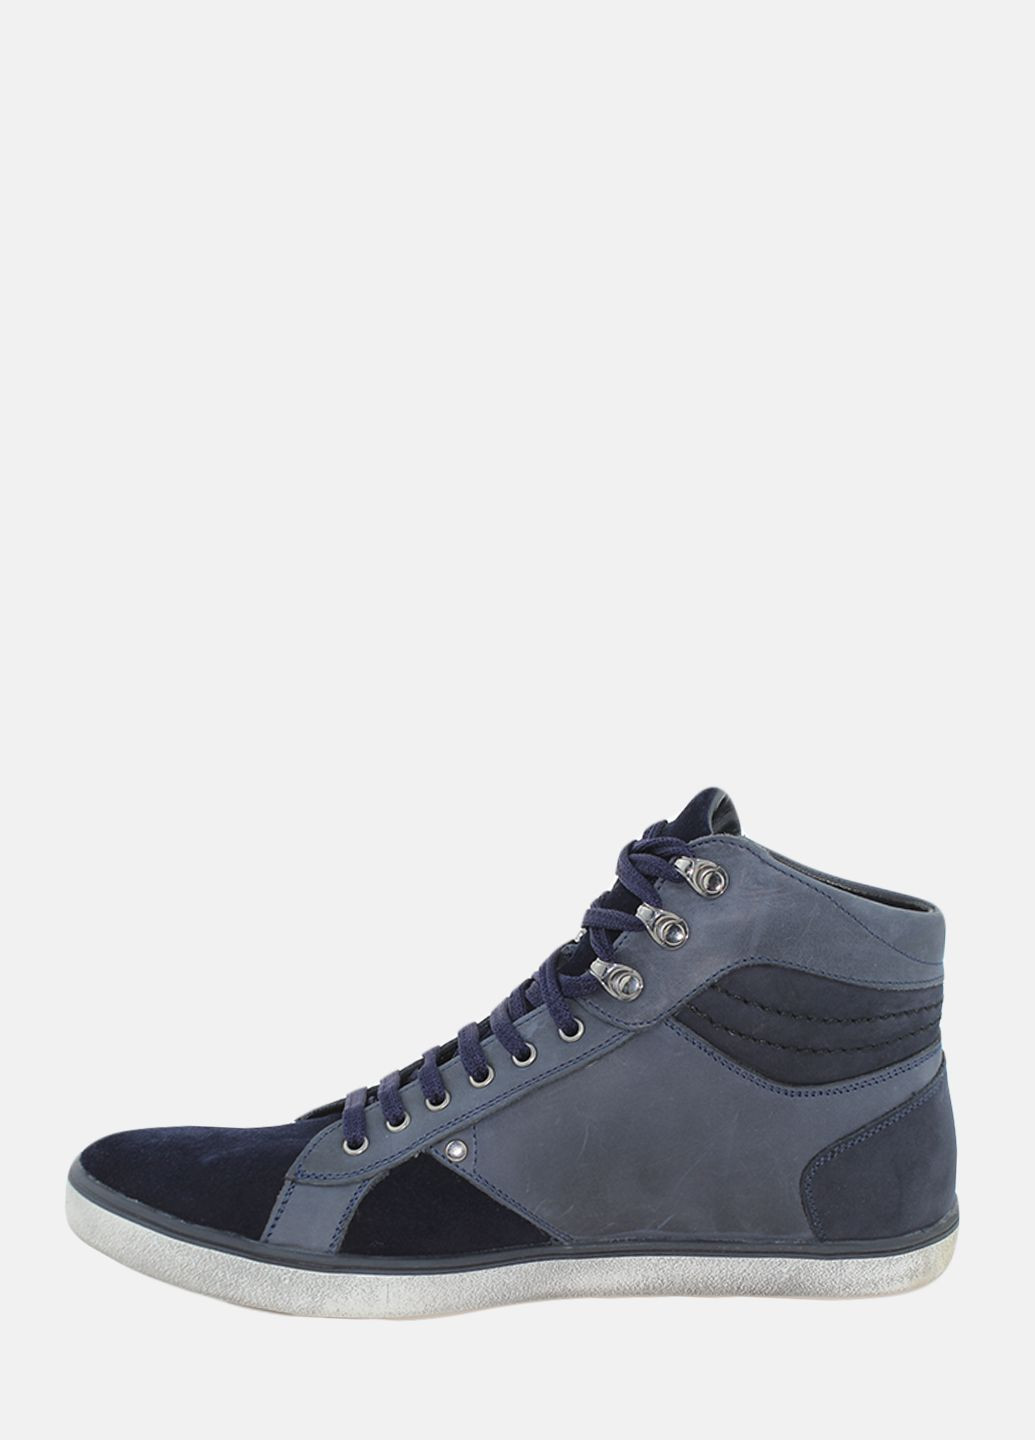 Синие осенние ботинки gw1633.04 синий Goover